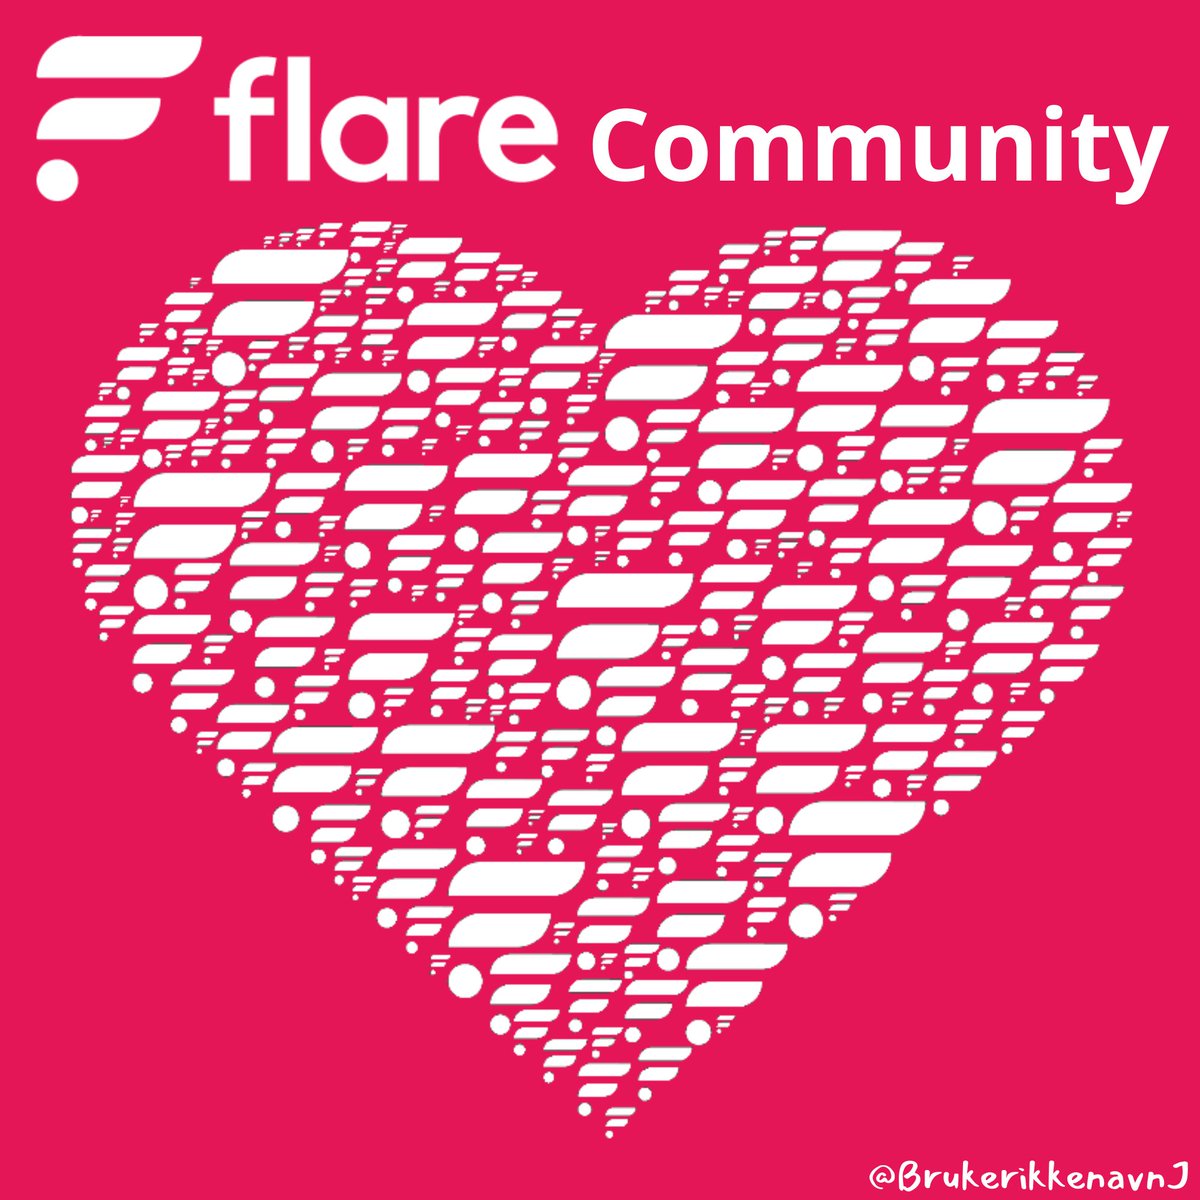 @FlareNetworks #FlareCommunity #FlareFam
#FlareNetwork $FLR ☀️ 💛☀️💛